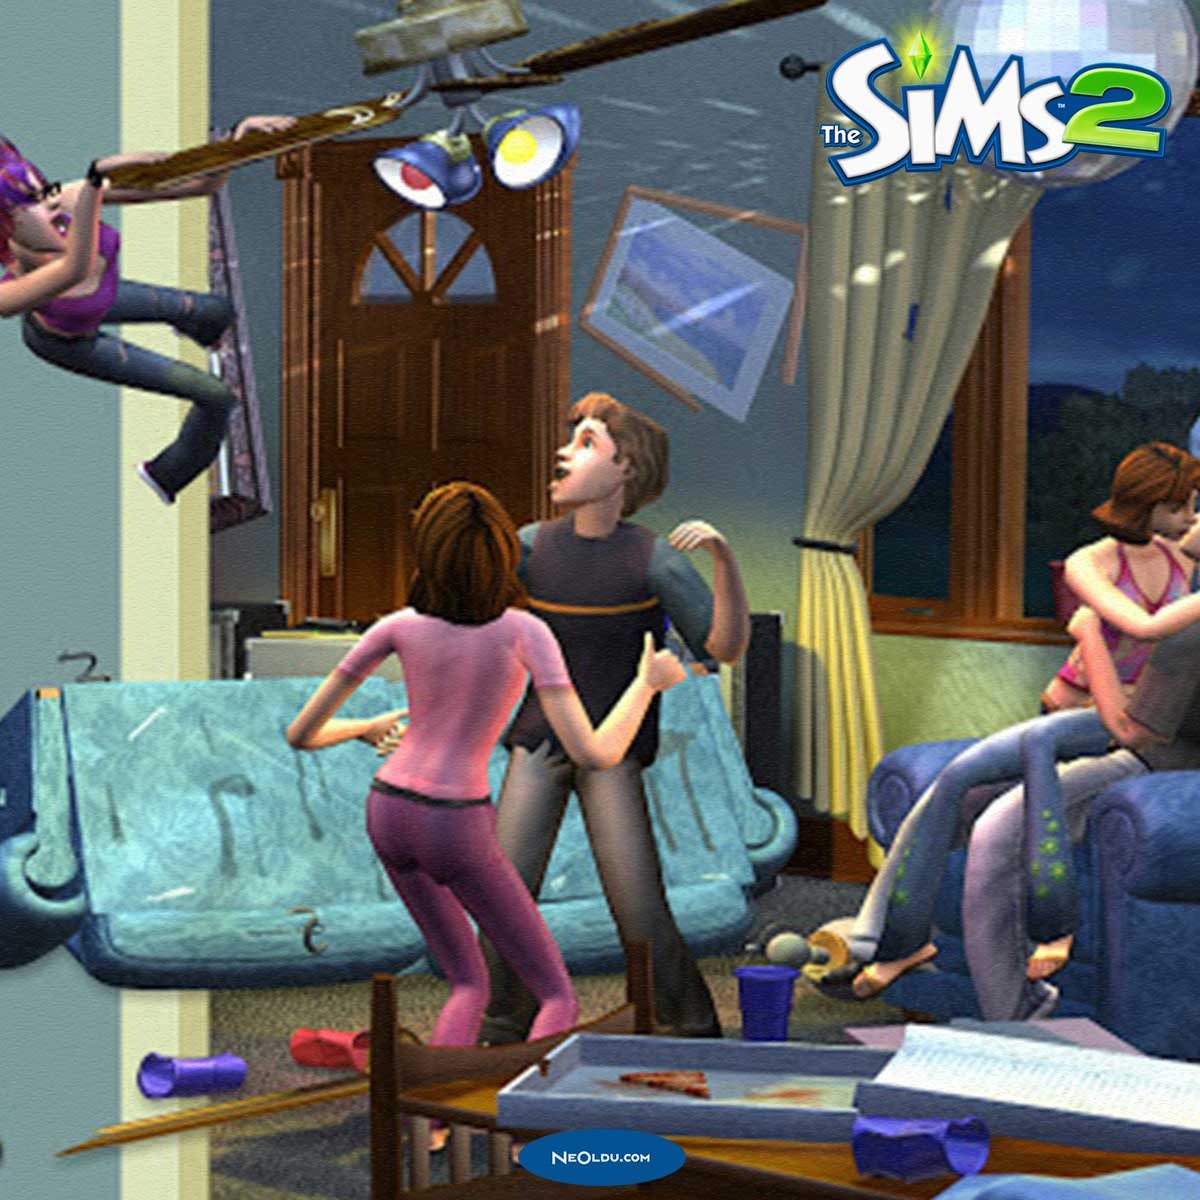 Sims 2 Hileleri